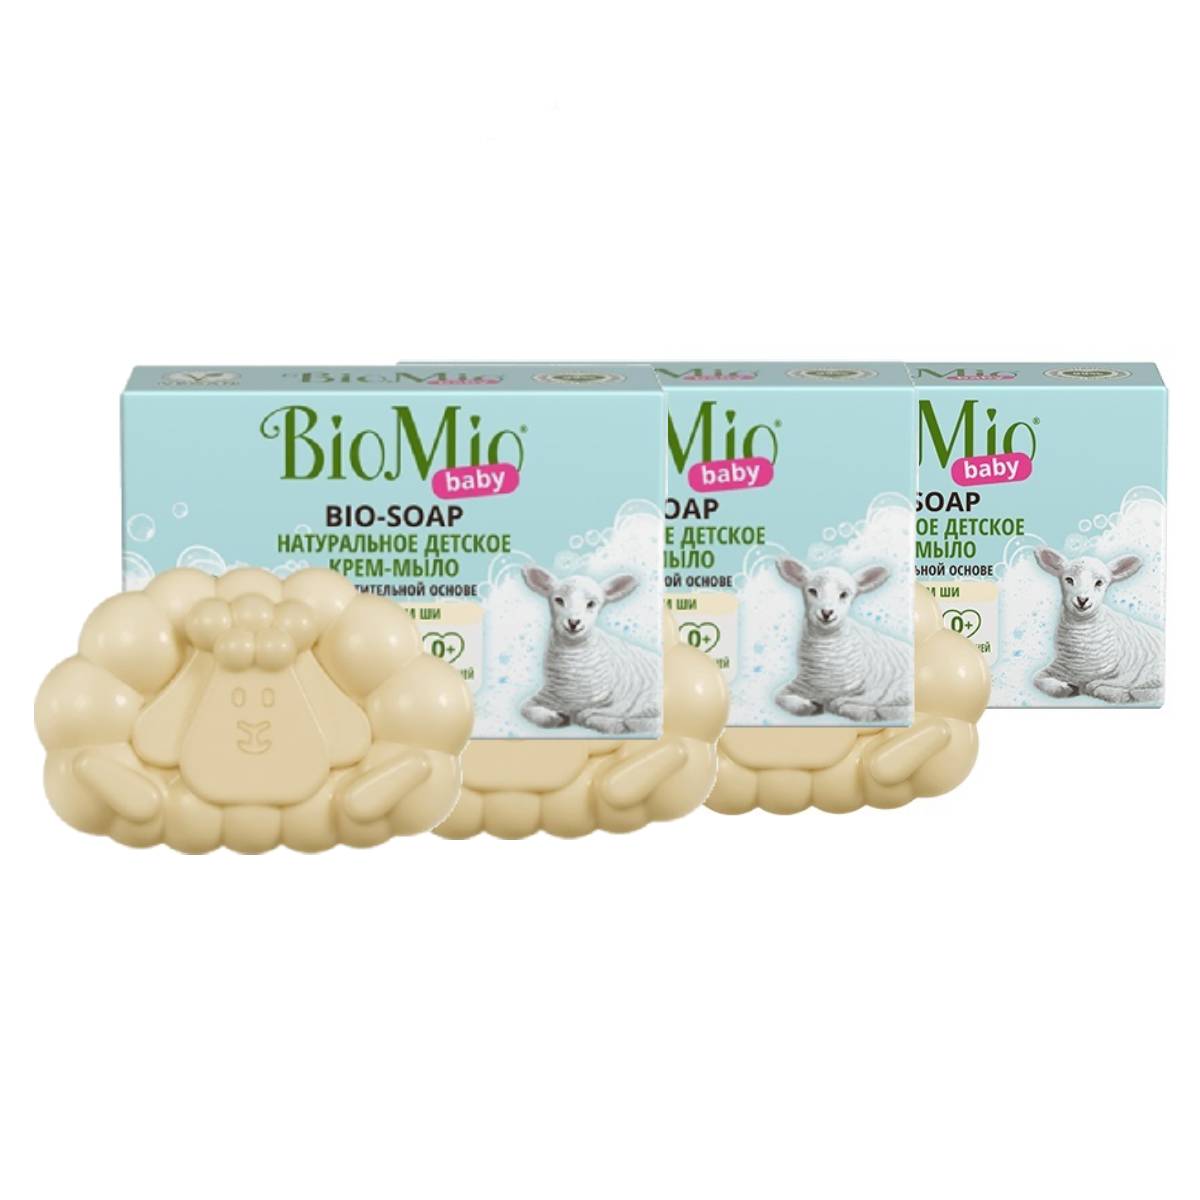 BioMio Натуральное детское крем-мыло с маслом ши, 3 х 90 г (BioMio, Мыло)